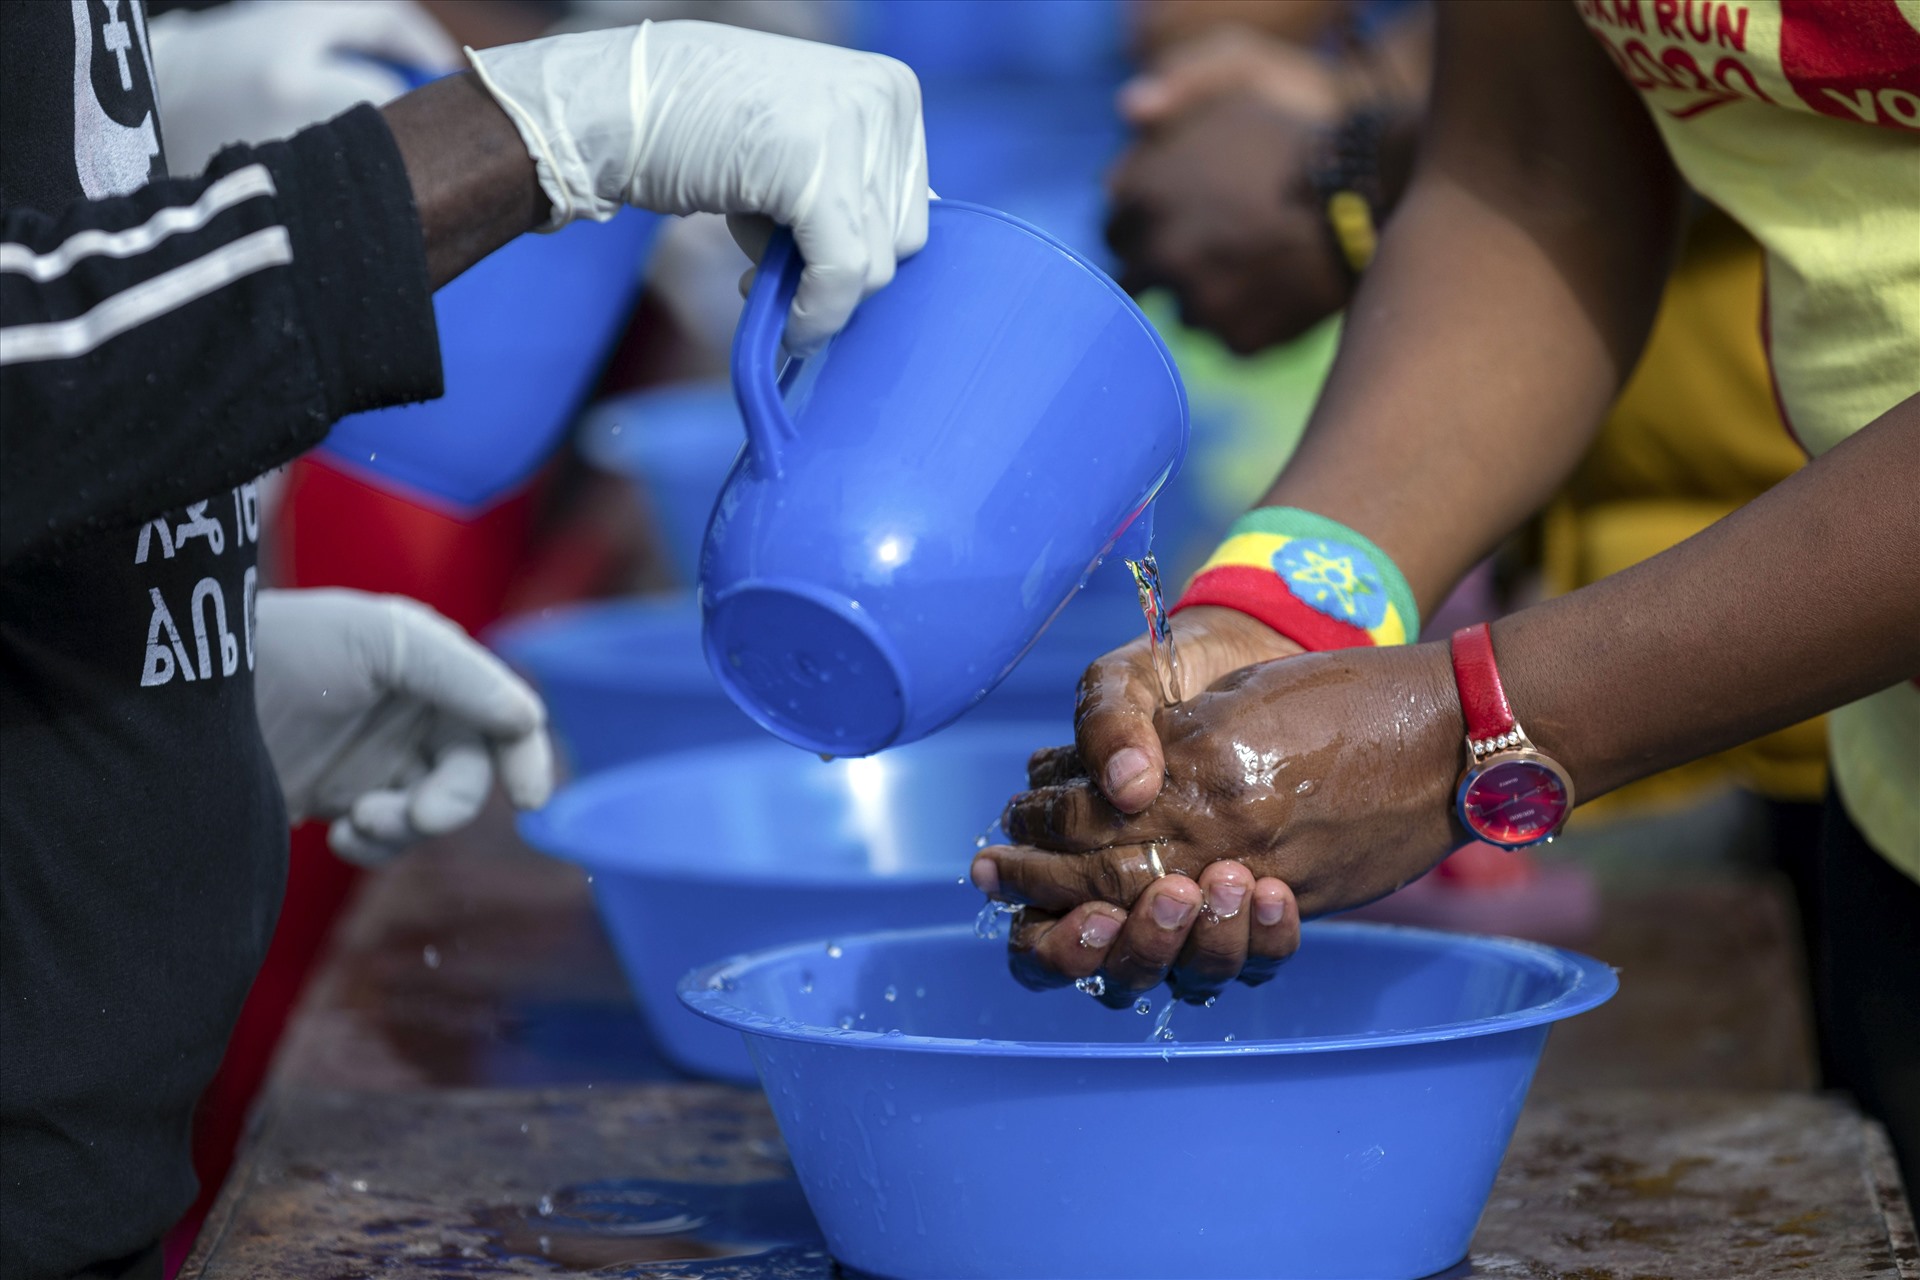 Khuyến khích người dân tăng cường rửa tay bằng xà phòng và nước. Ảnh chụp tại Addis Ababa, Ethiopia, ngày 15.3. Ảnh: AP